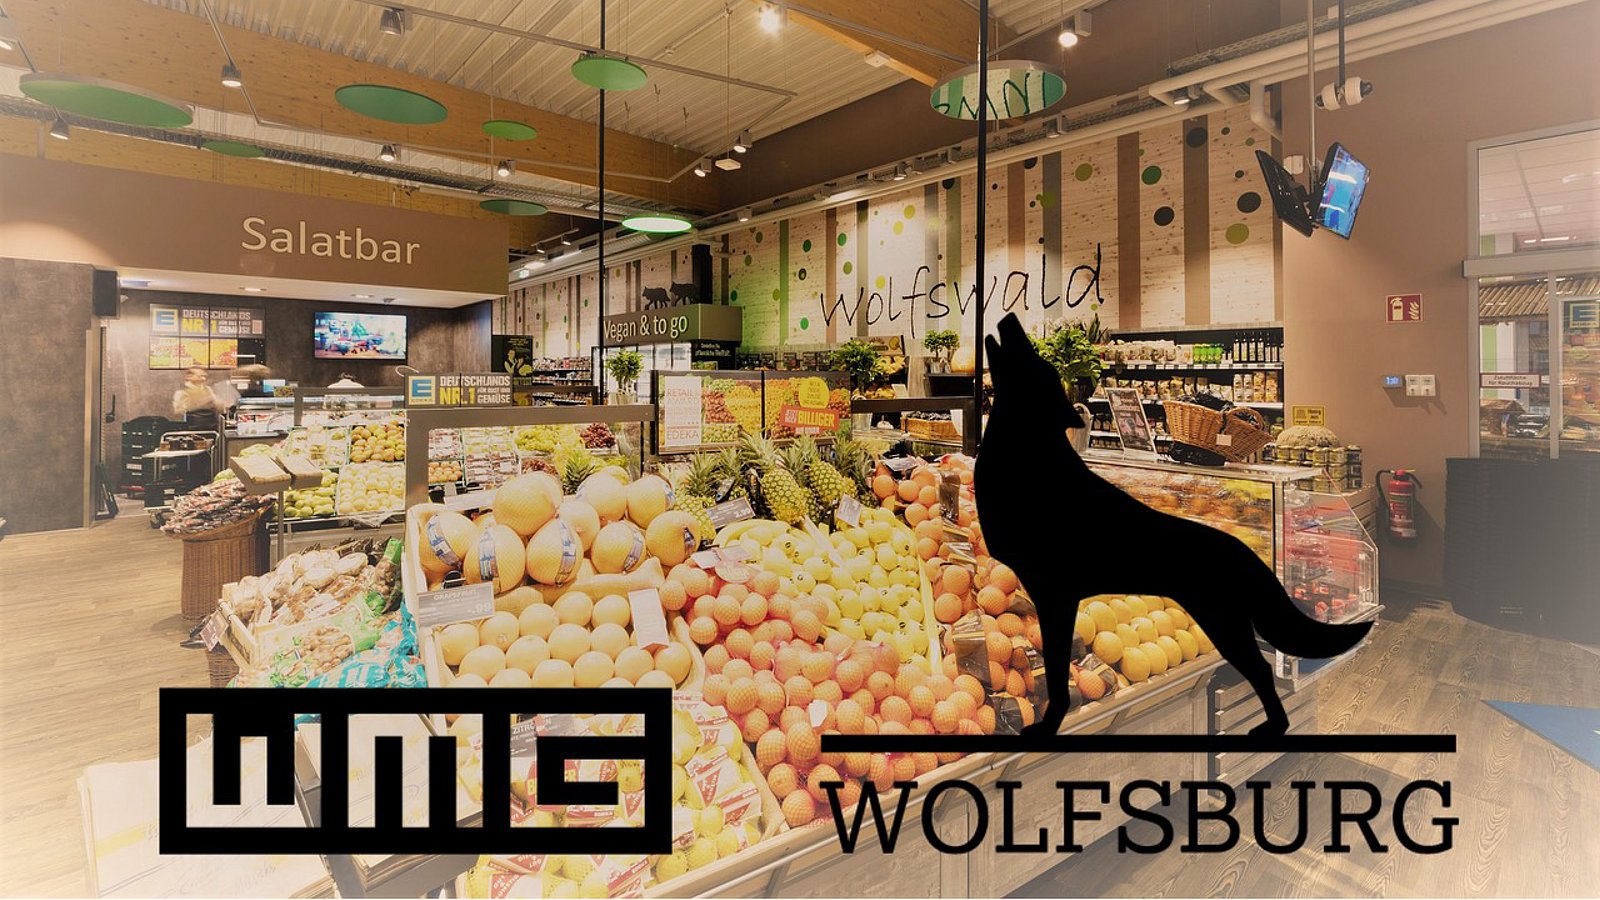 Logo WMG Wolfsburg, im Hintergrund Aufnahme der Obst- und Gemüseabteilung eines Supermarkts